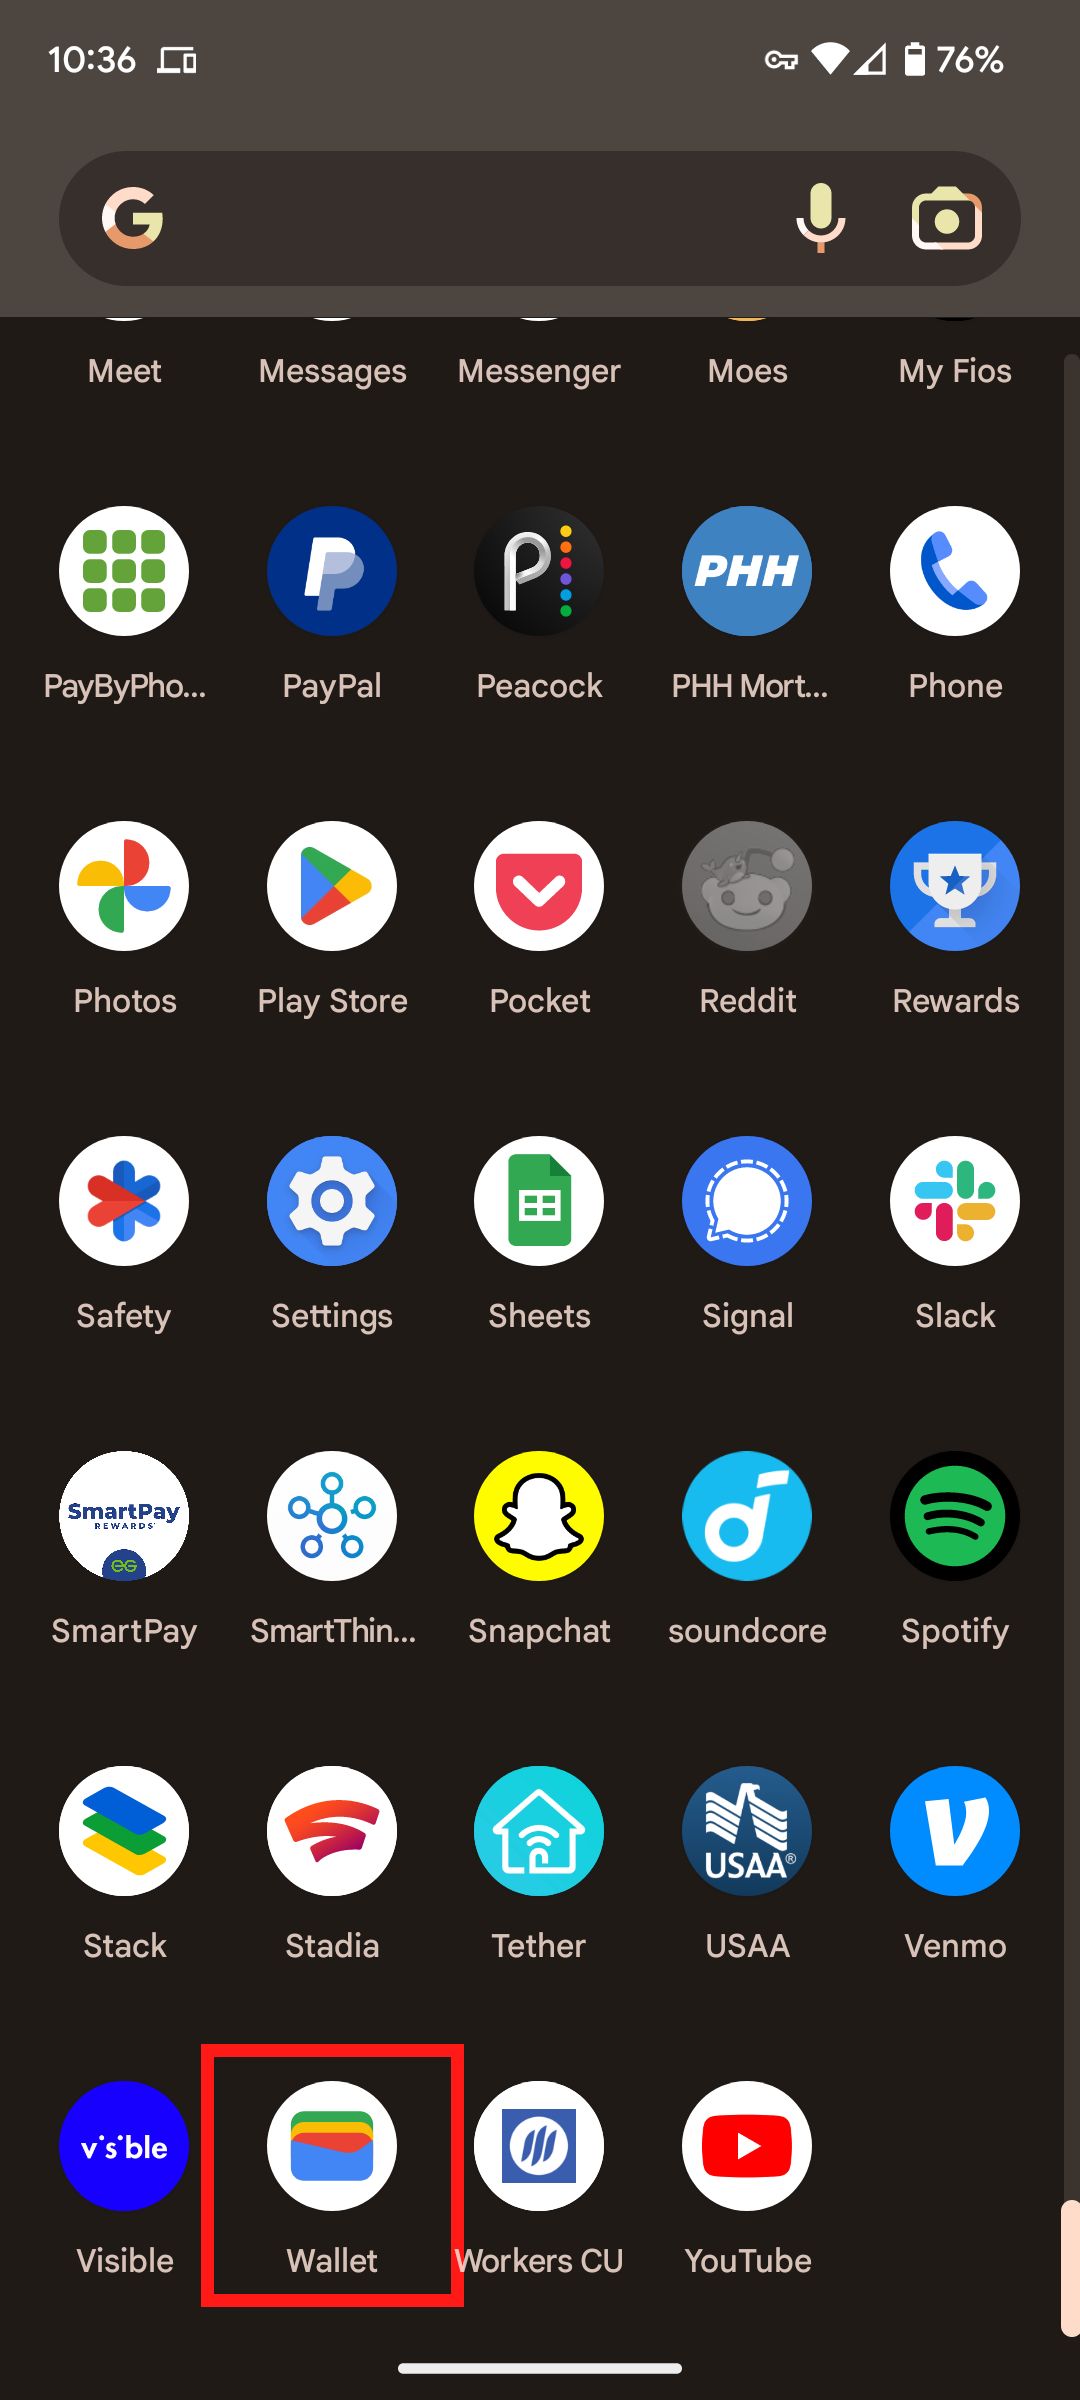 Uma gaveta de apps para smartphone Google Pixel com o app Google Wallet contornado por uma caixa vermelha